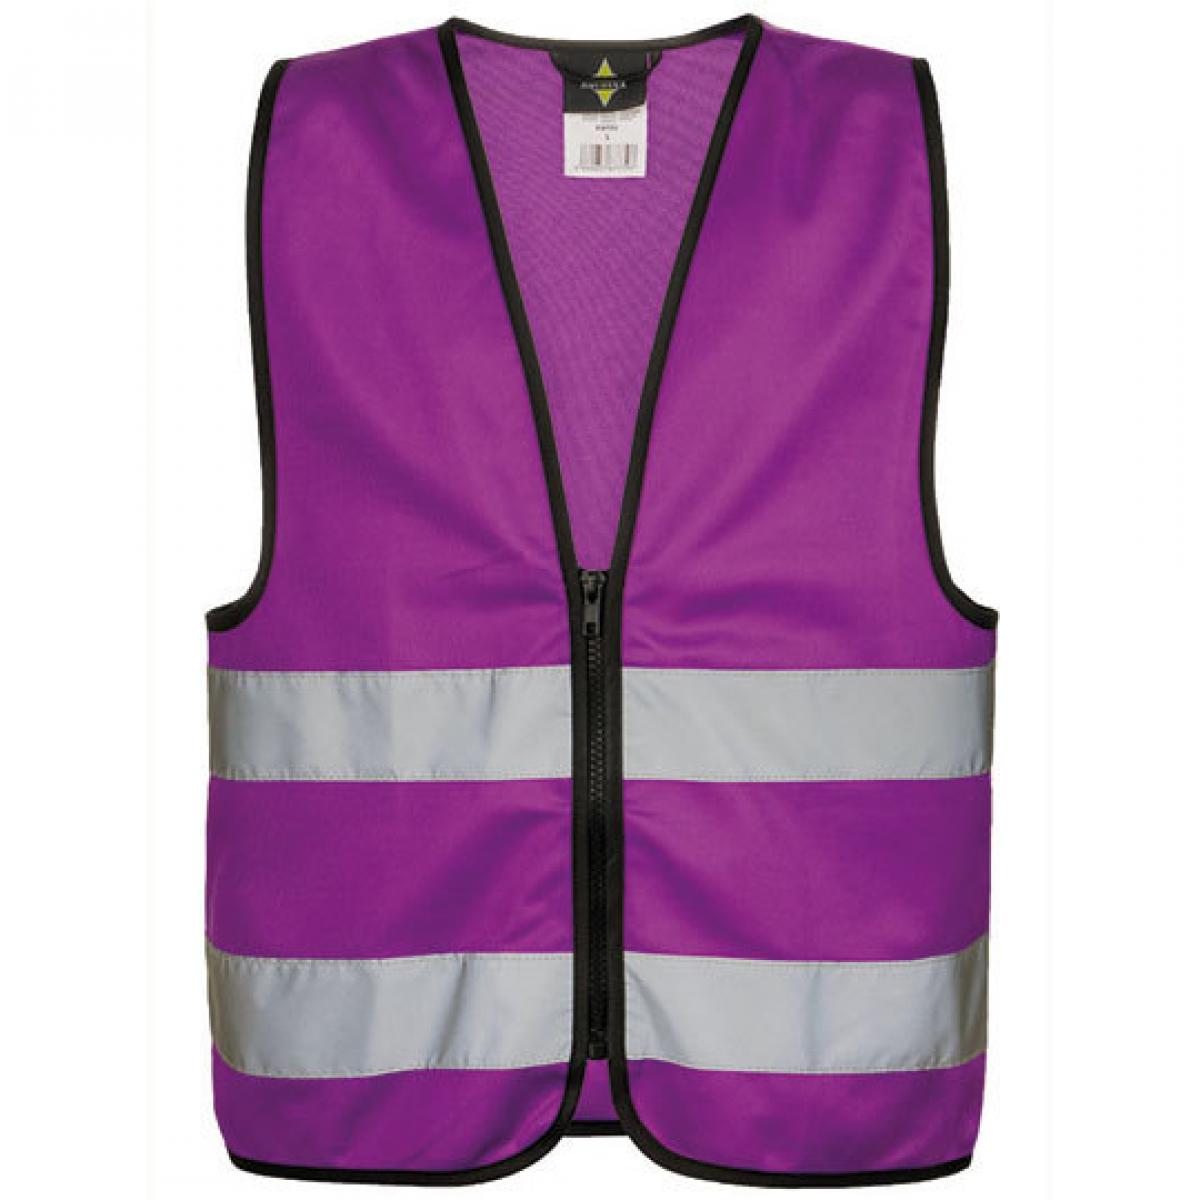 Hersteller: Korntex Herstellernummer: KWRX Artikelbezeichnung: Kinder Safety Vest for Kids with Zipper EN1150 Farbe: Violett